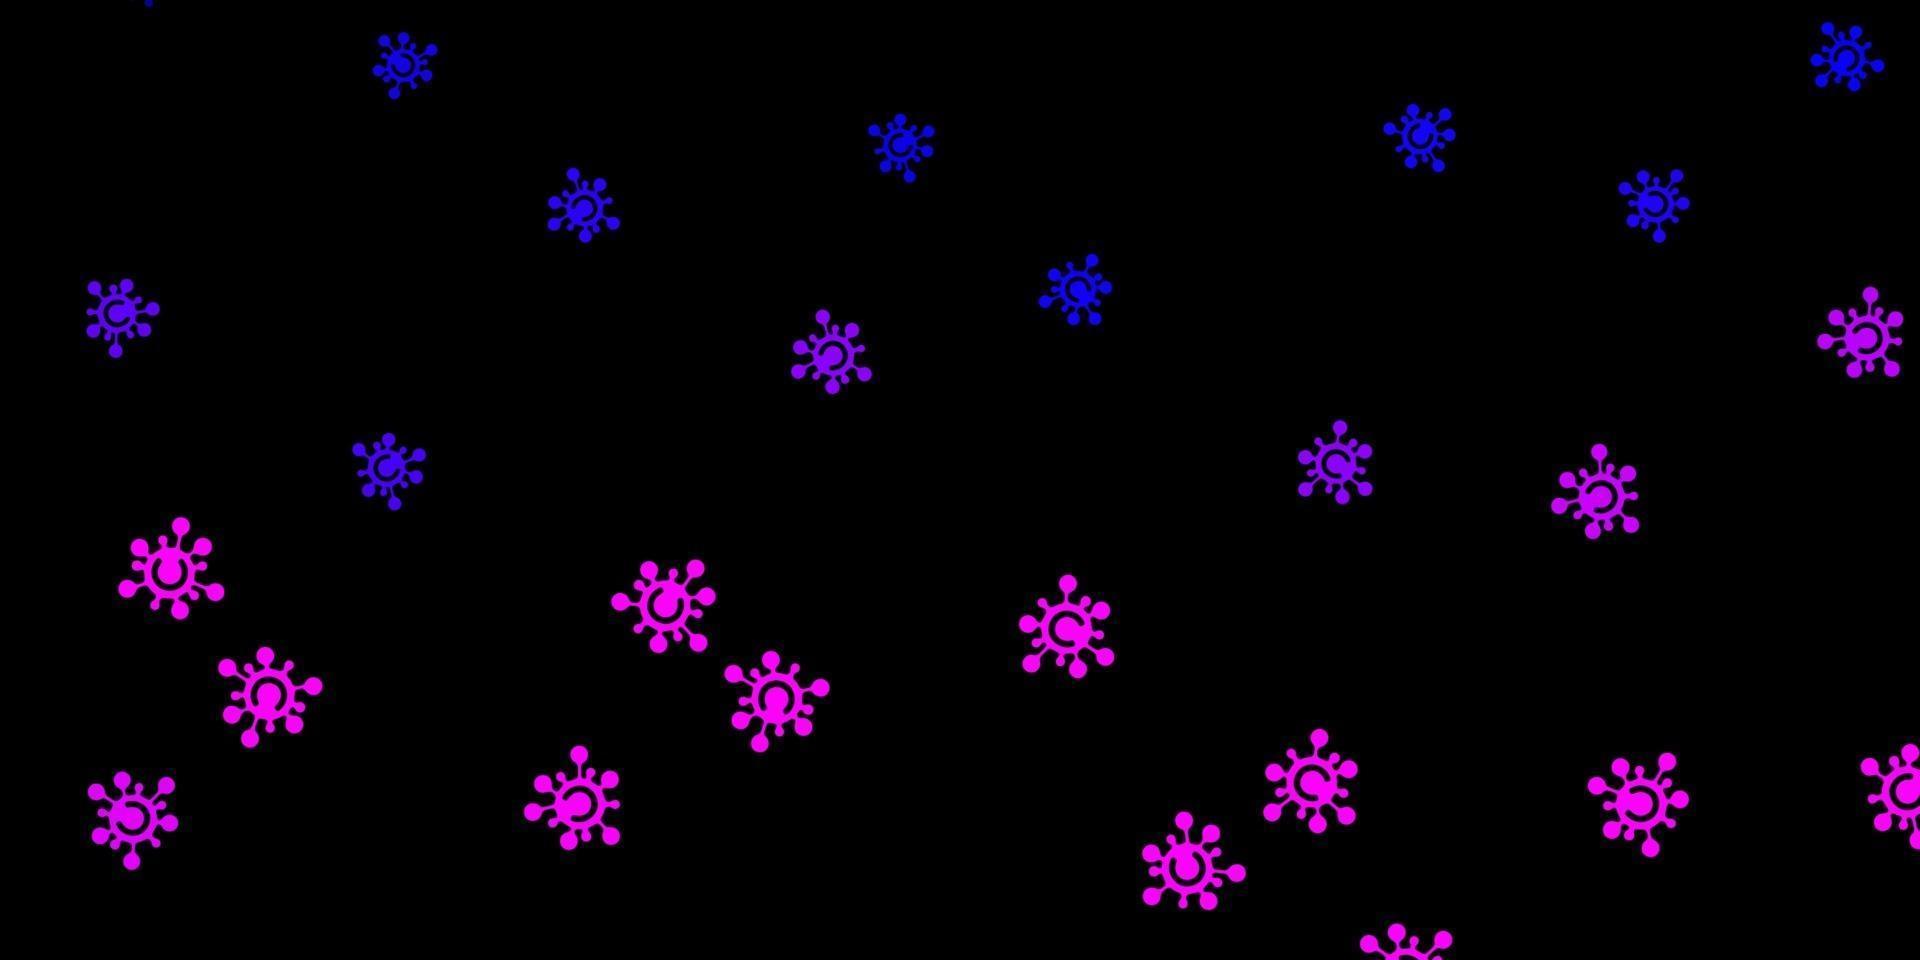 mörk lila, rosa vektor bakgrund med virussymboler.